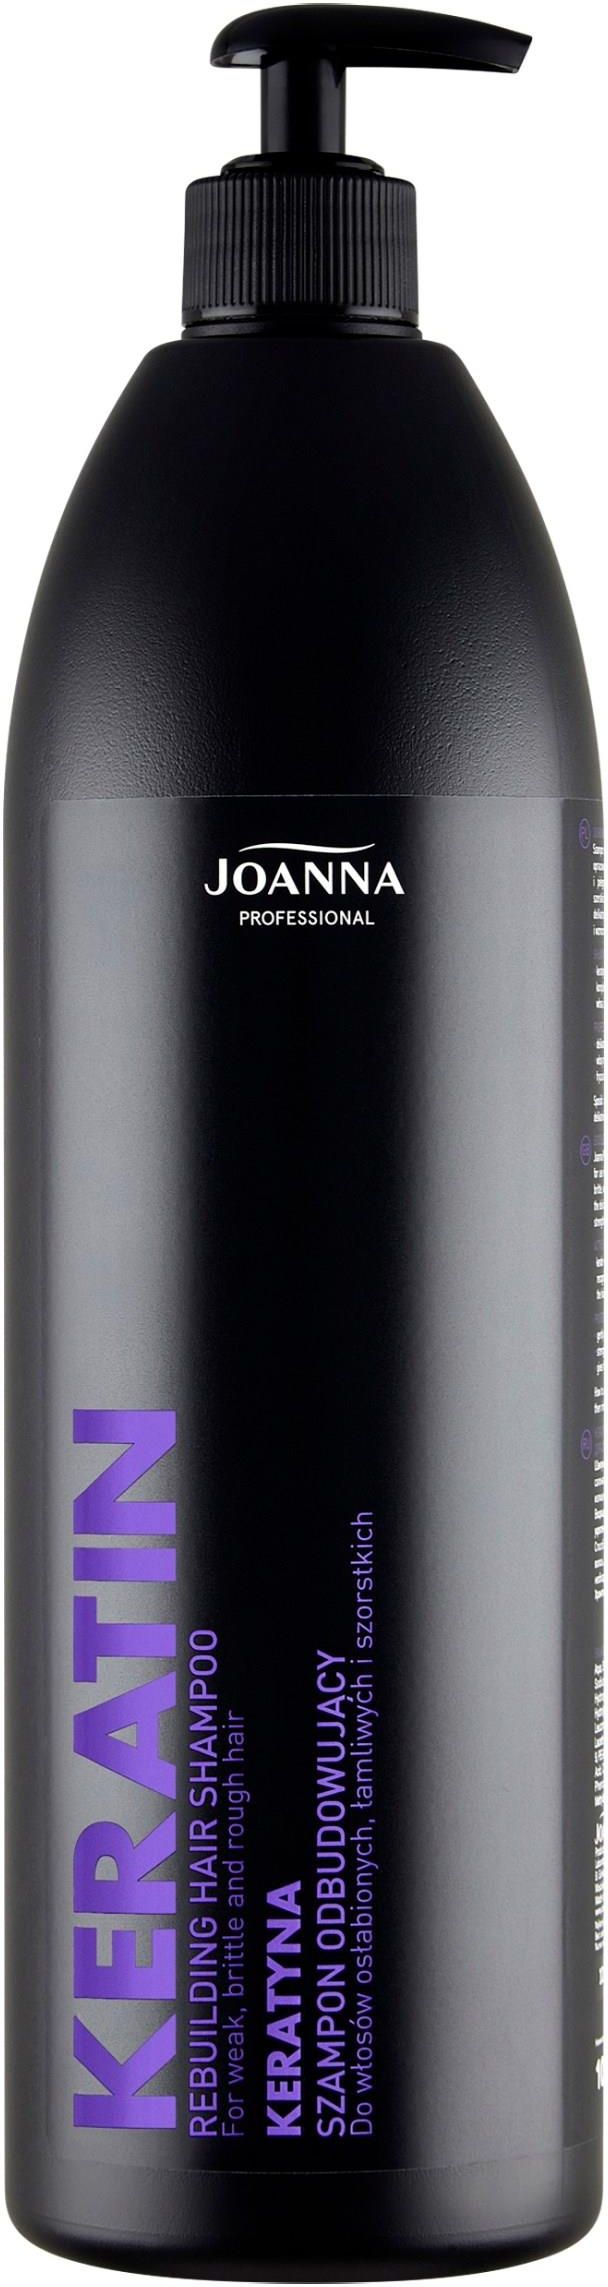 joanna szampon z keratyna1000